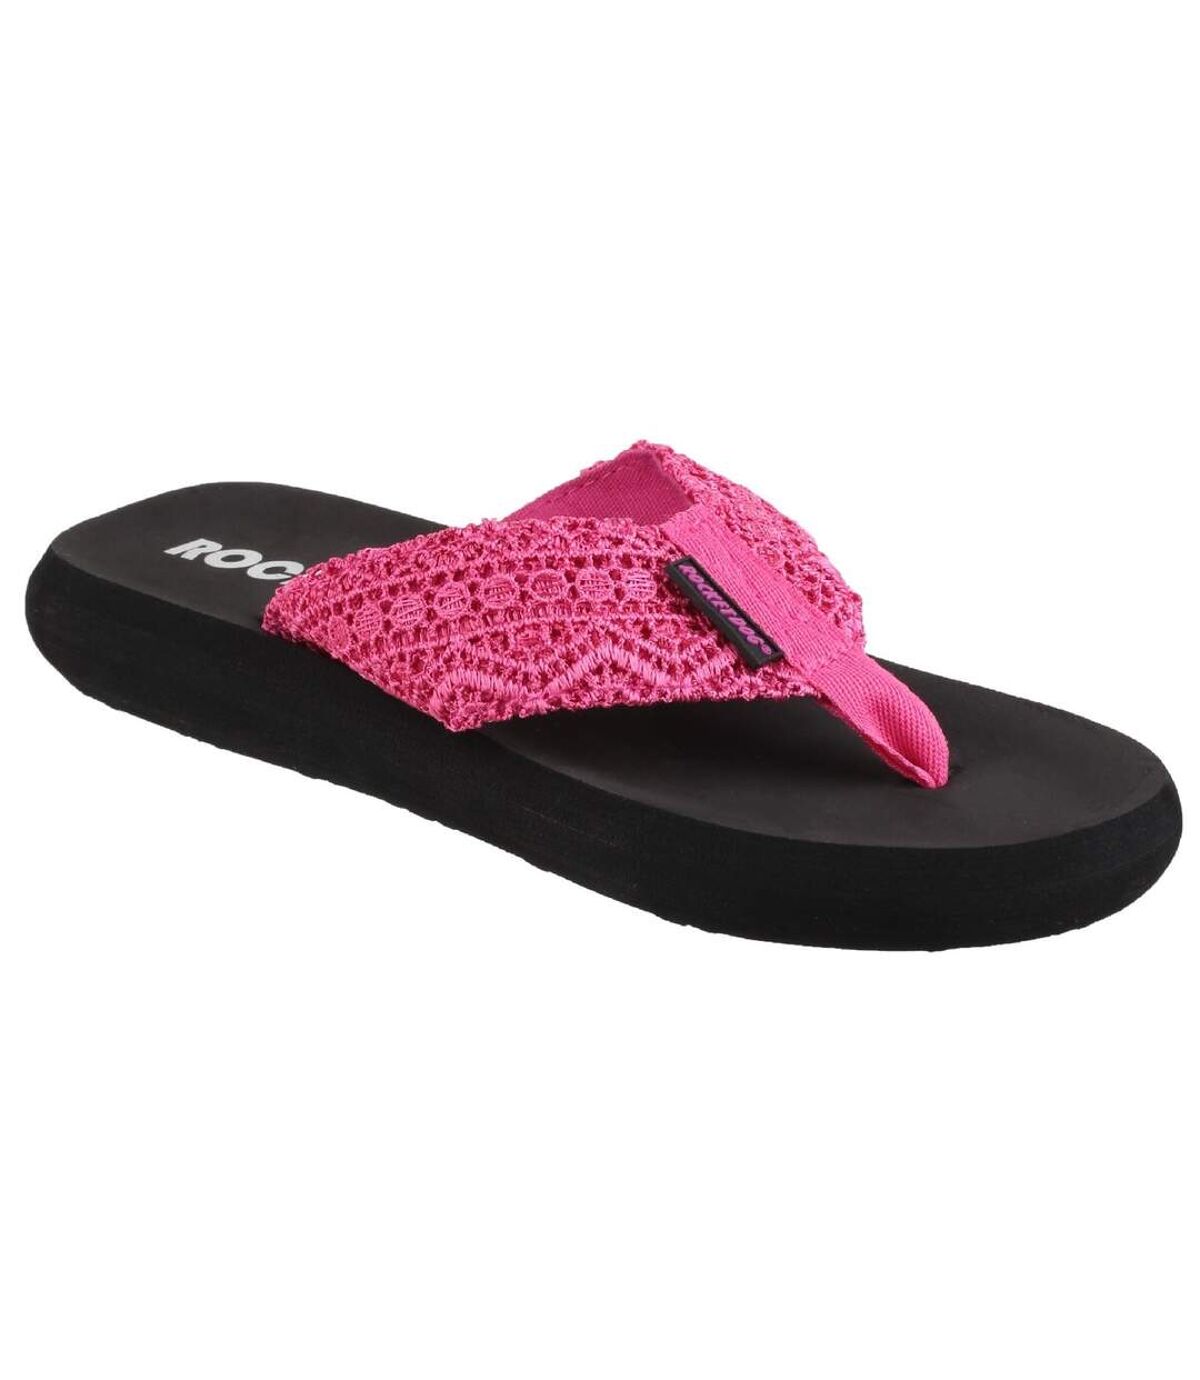 Rocket Dog Womens/Ladies Spotlight Slip On Sandals (Pink) - UTFS5350